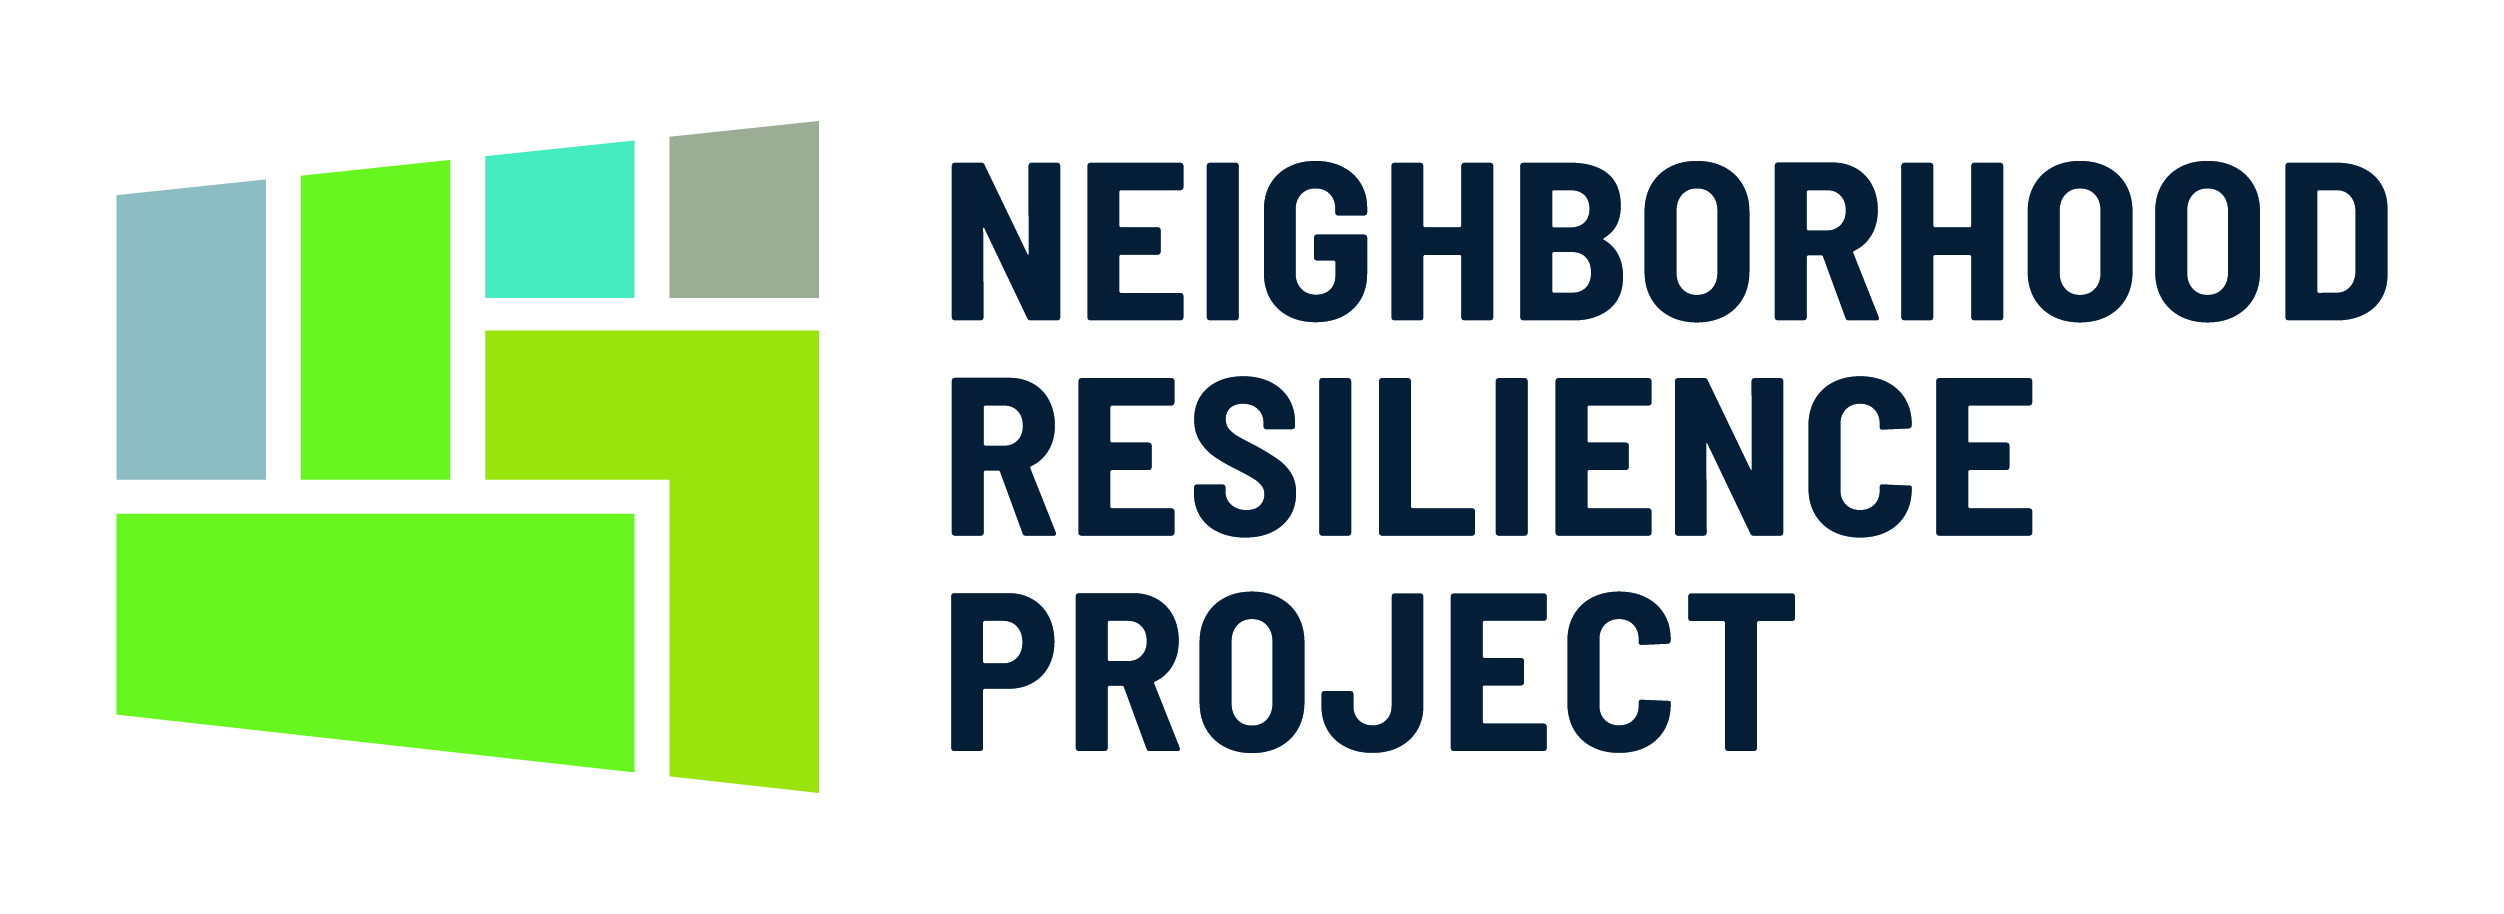 Neighborhood Resilience Project logo